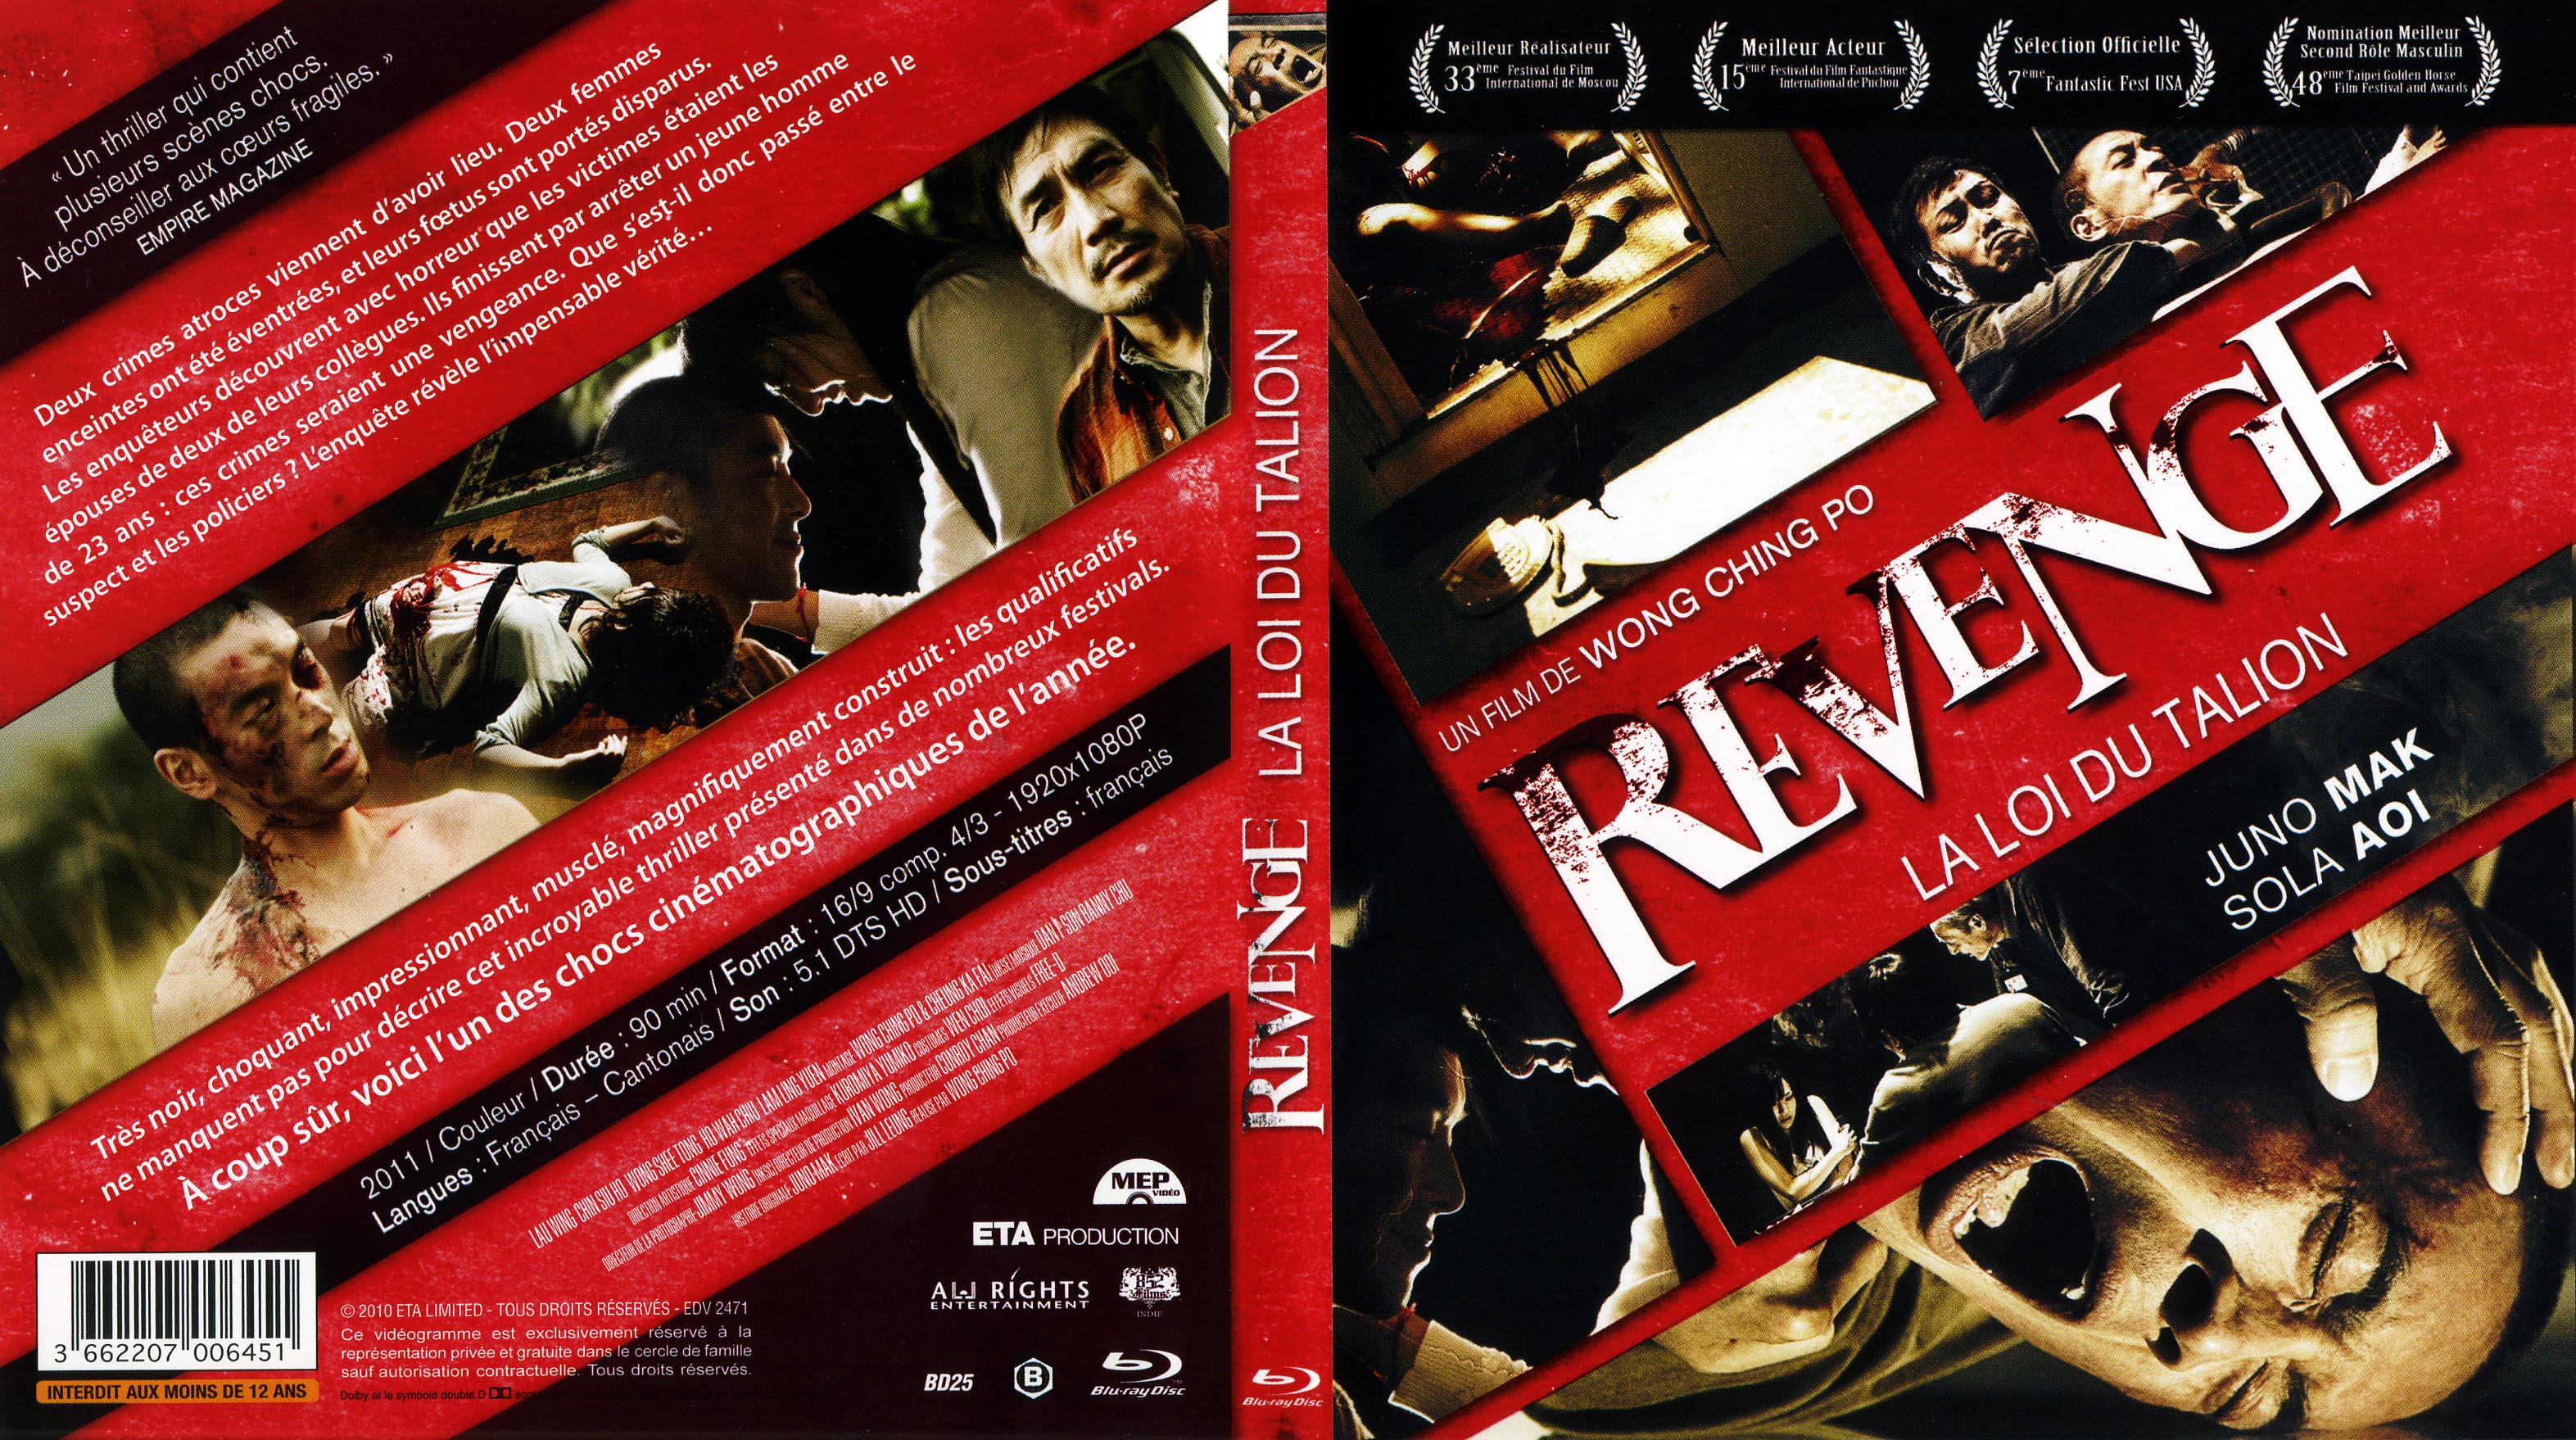 Jaquette DVD Revenge la loi du talion (BLU-RAY)